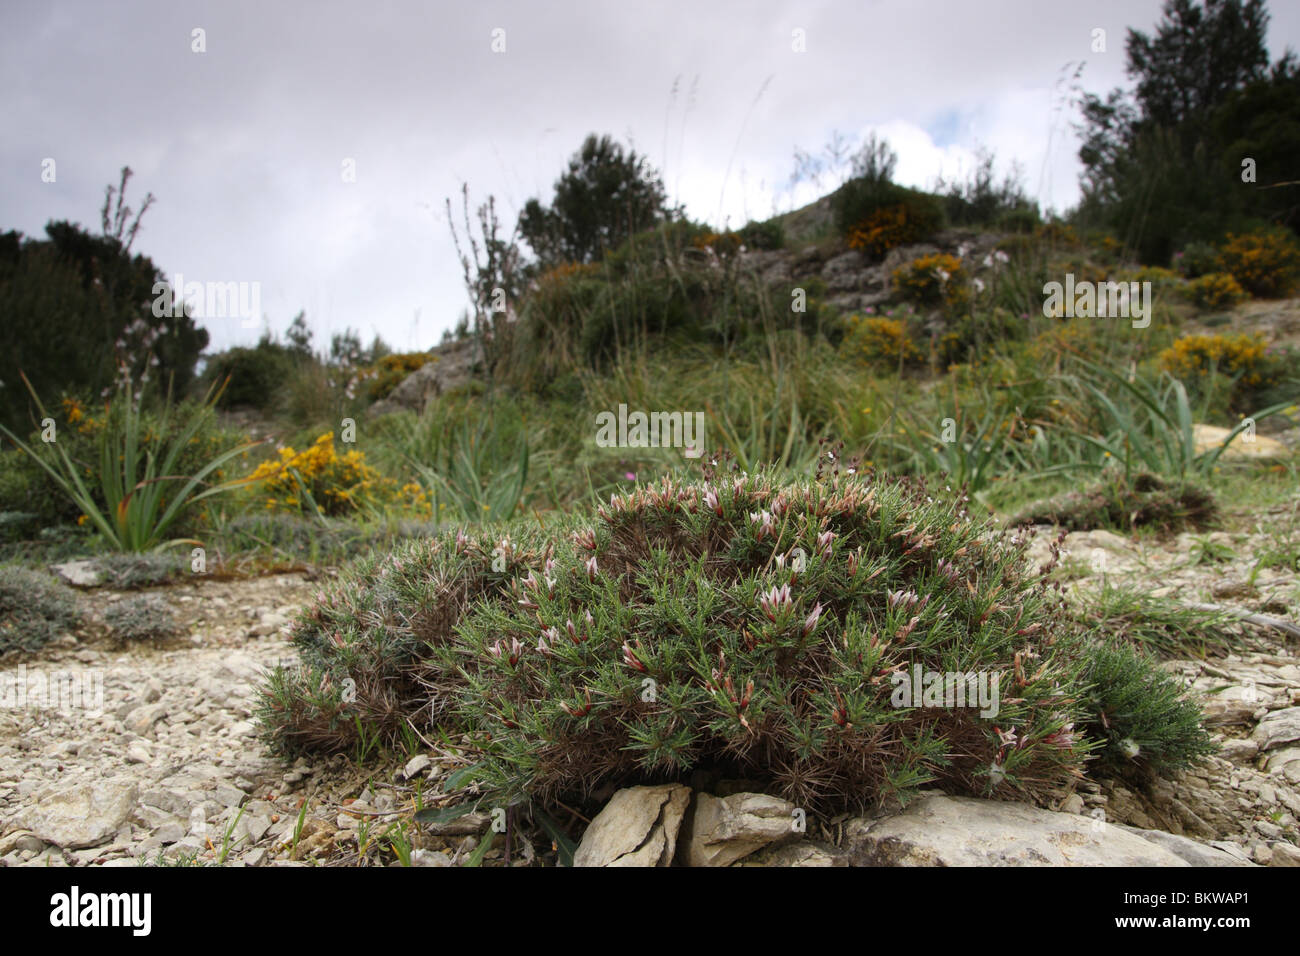 La montagne dans la partie nord-est de Majorque, accessible via Arta, contiennent de très insteresting plantes, parmi lesquelles un certain nombre d'espèces endémiques des îles Baléares. Astragalus balearicus est l'un d'entre eux. Elle forme de petites touffes épineuses, à fleurs roses. Banque D'Images